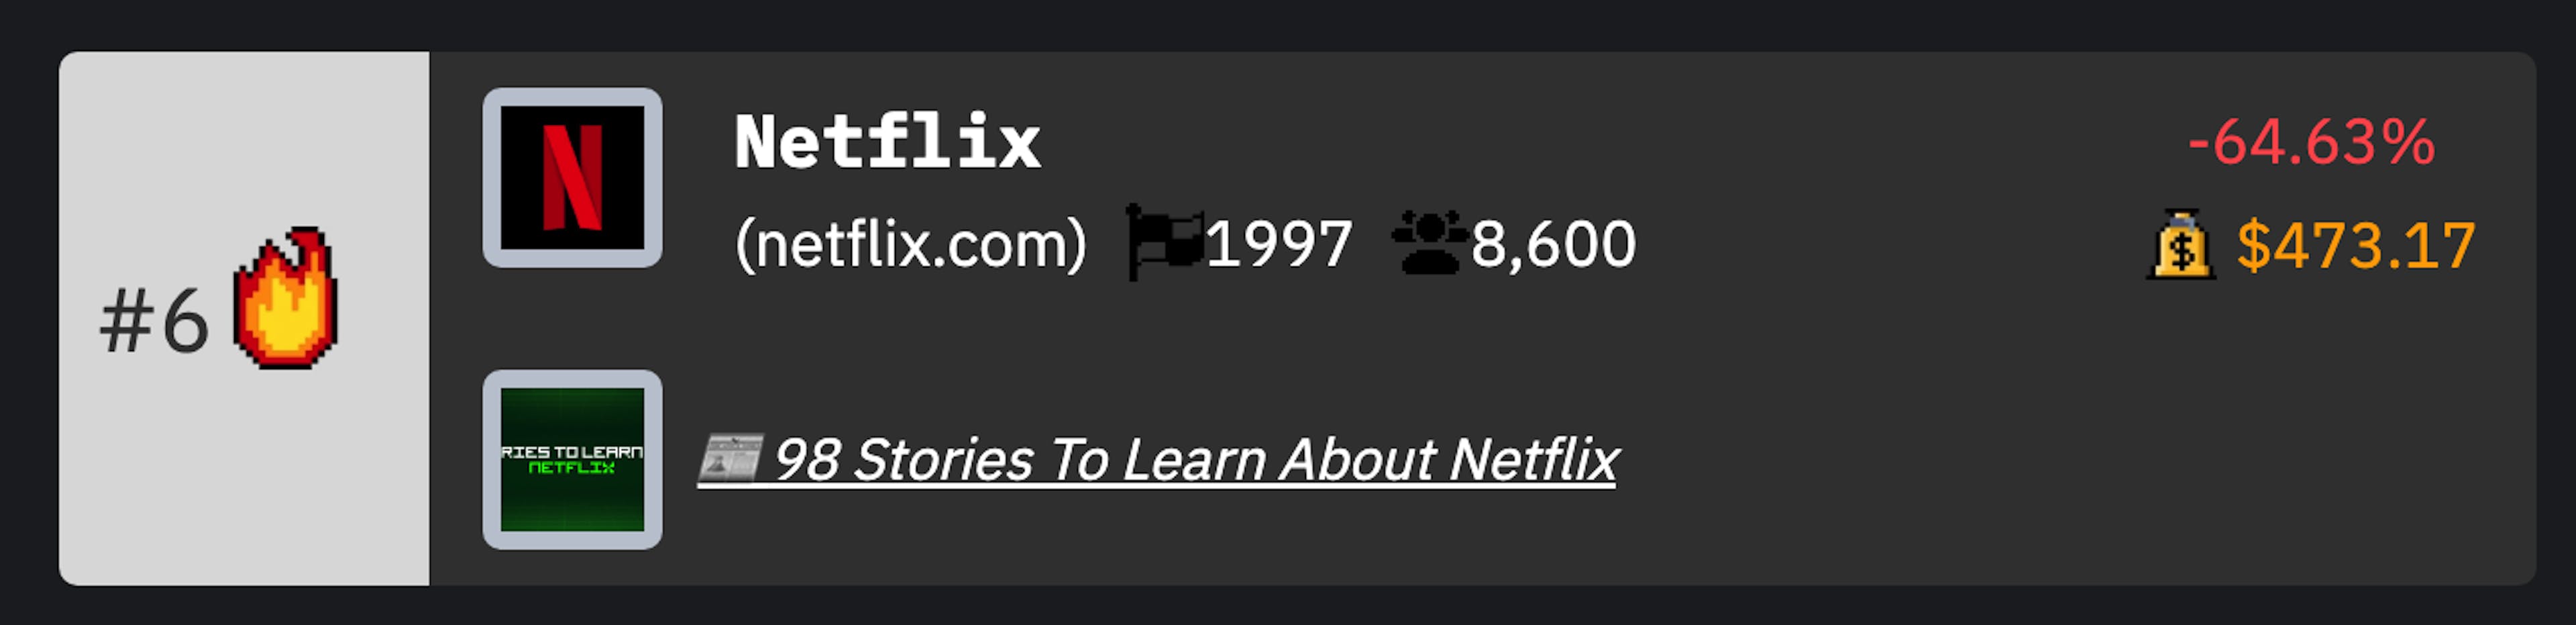 Classificação TCNB da Netflix